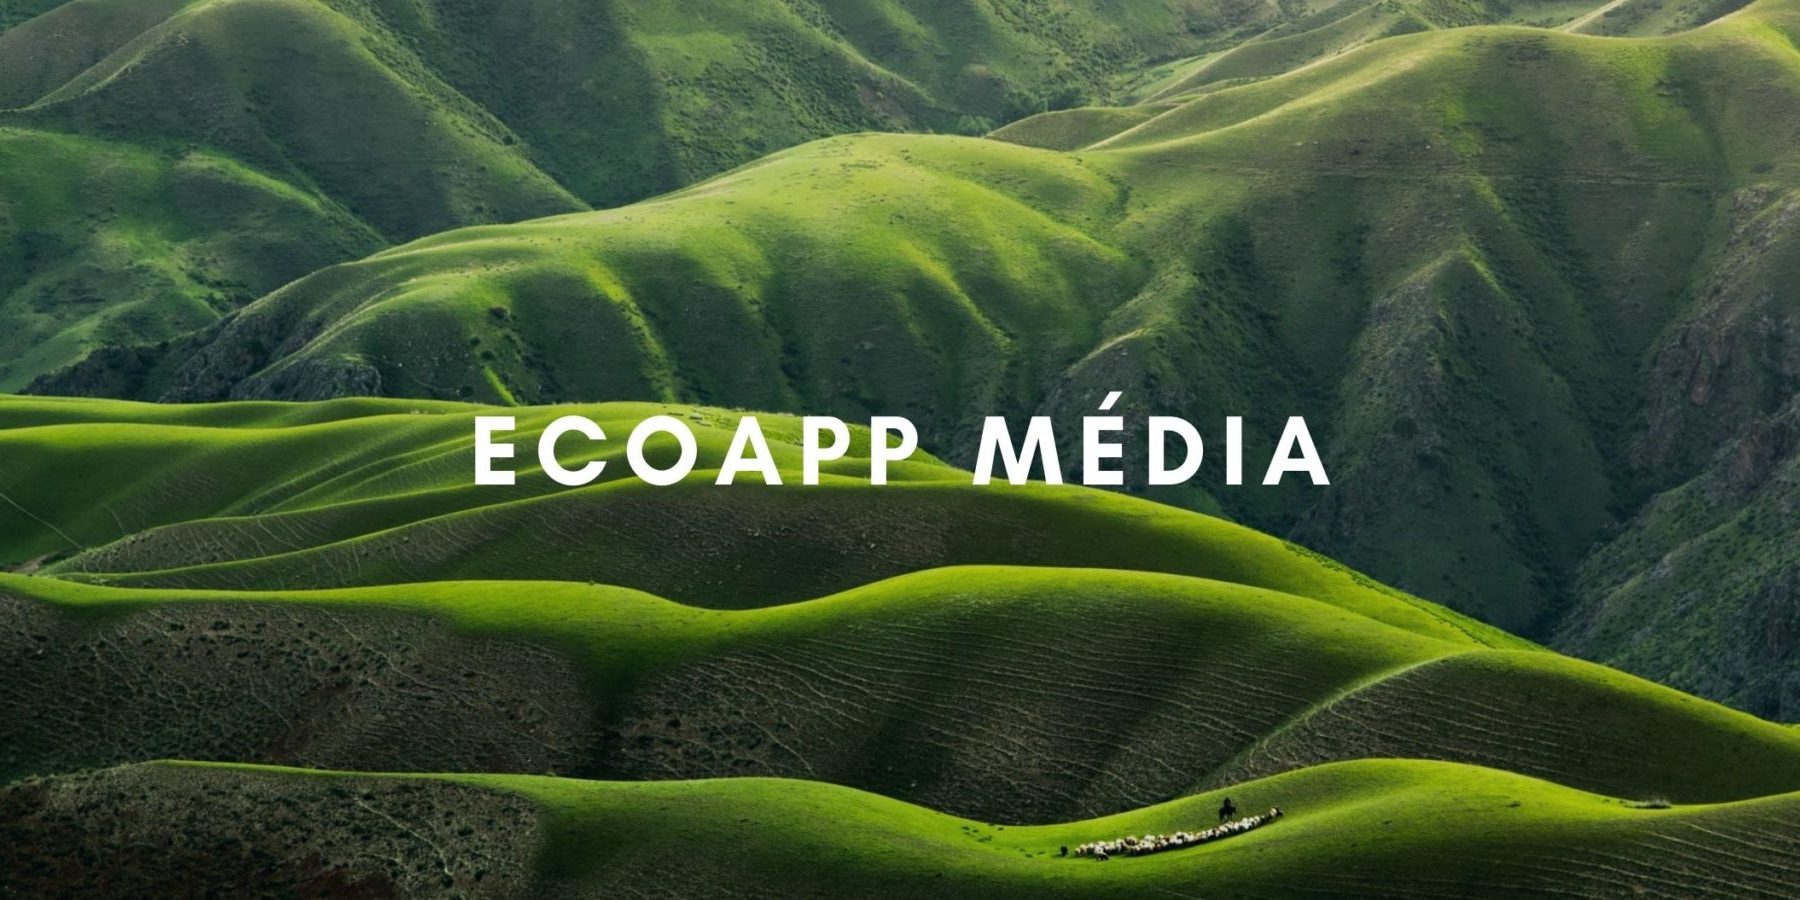 Résultat de recherche d'images pour "ecoapp media"